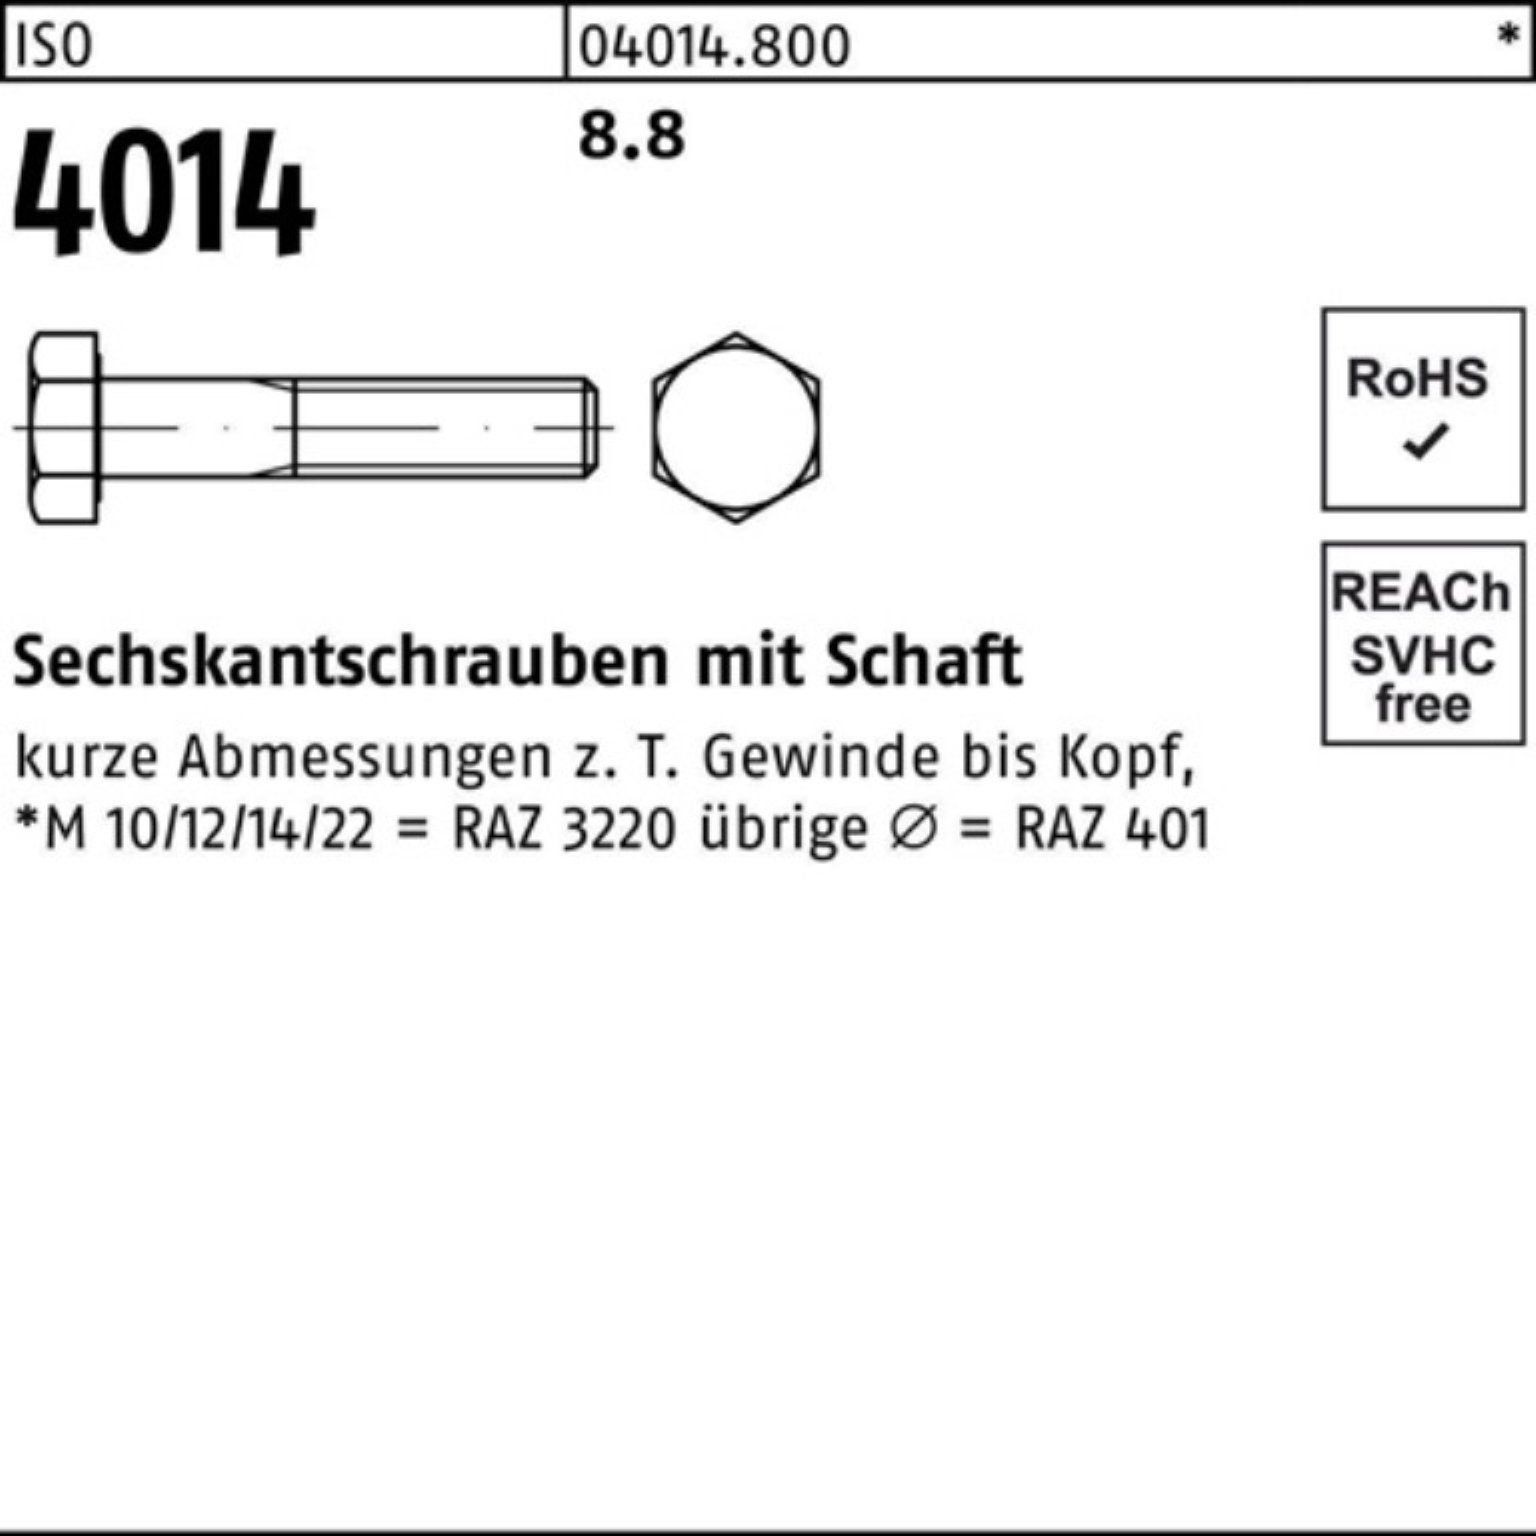 ISO Sechskantschraube M8x Bufab Sechskantschraube 100er Pack 280 100 8.8 Stück IS 4014 Schaft